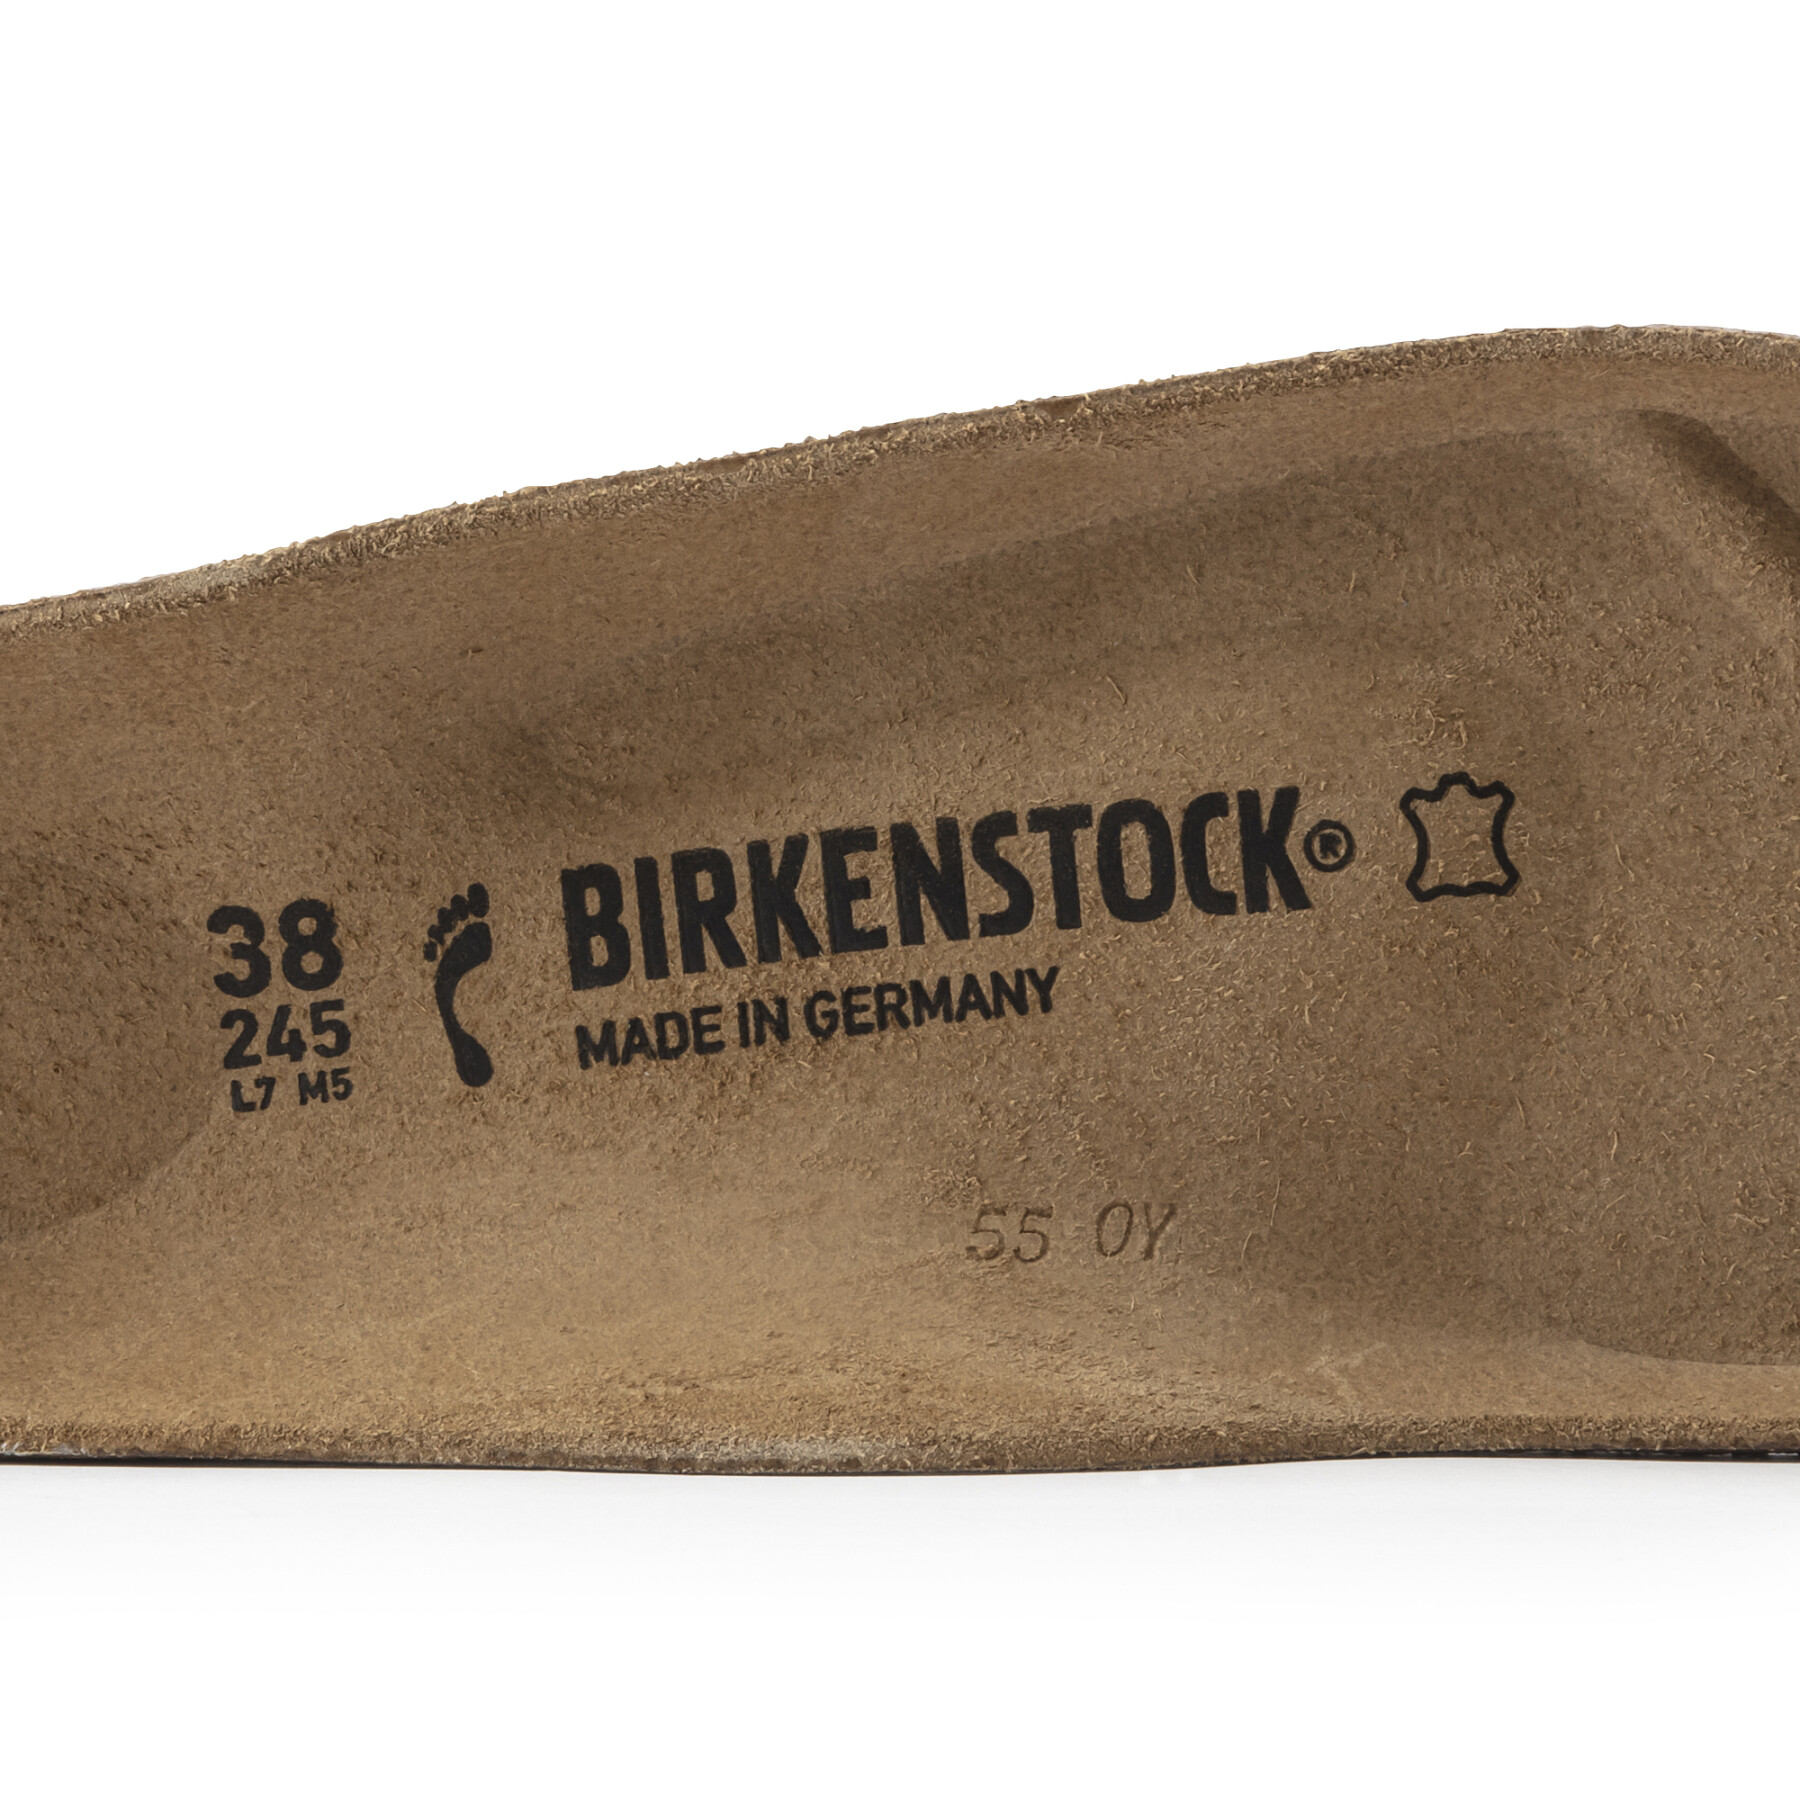 Suole strette Birkenstock